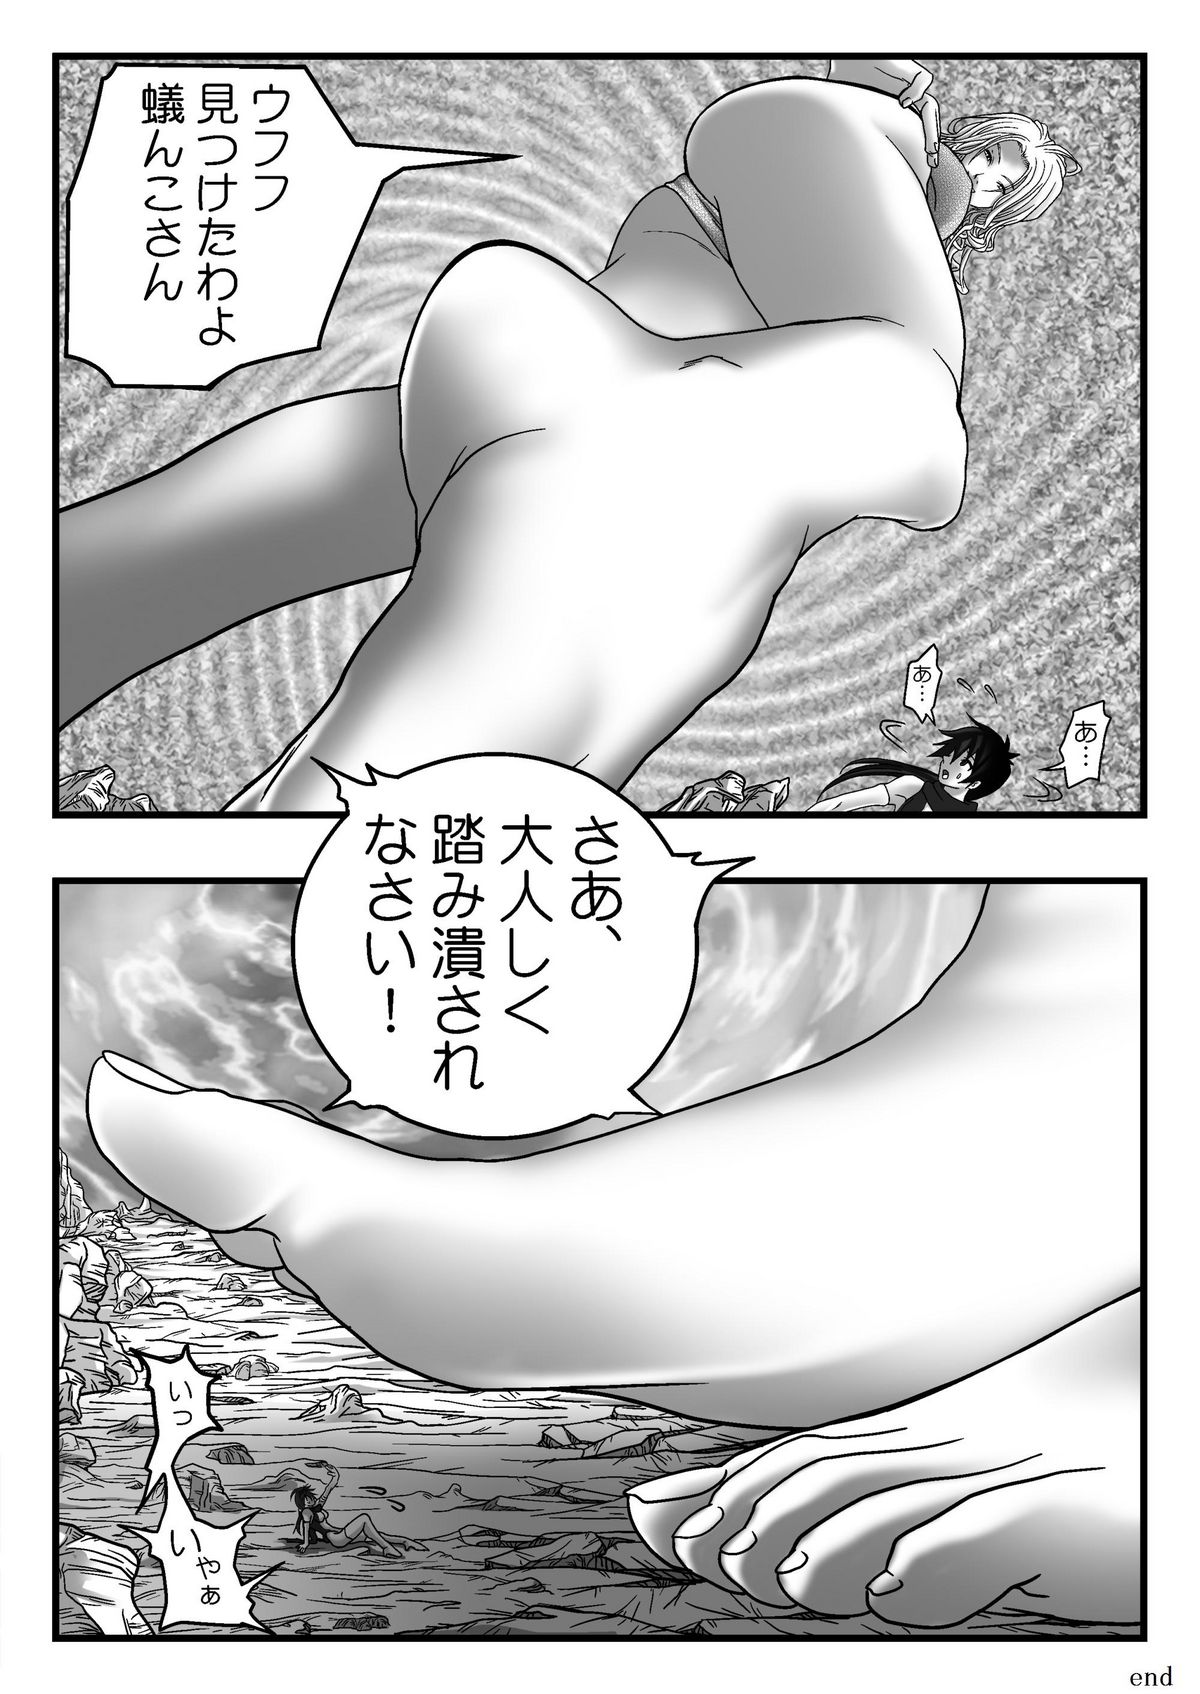 【ボンボン屋】百フェチ漫画Vol.3